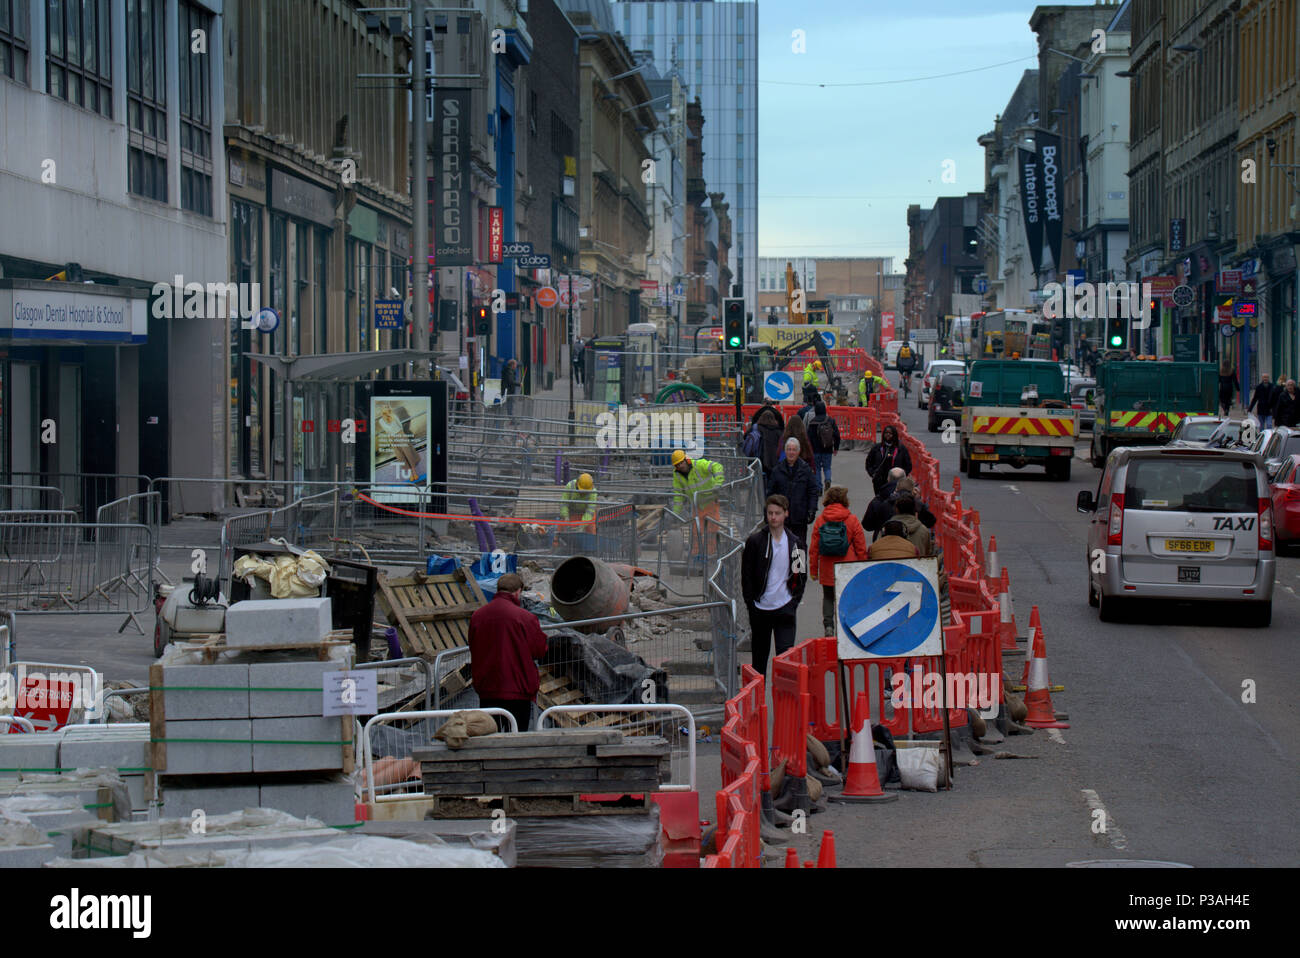 Las obras viales y actualización en zona peatonal mantenga ups problemas de tráfico la contaminación fire Sauchiehall Street, Glasgow, Reino Unido Foto de stock